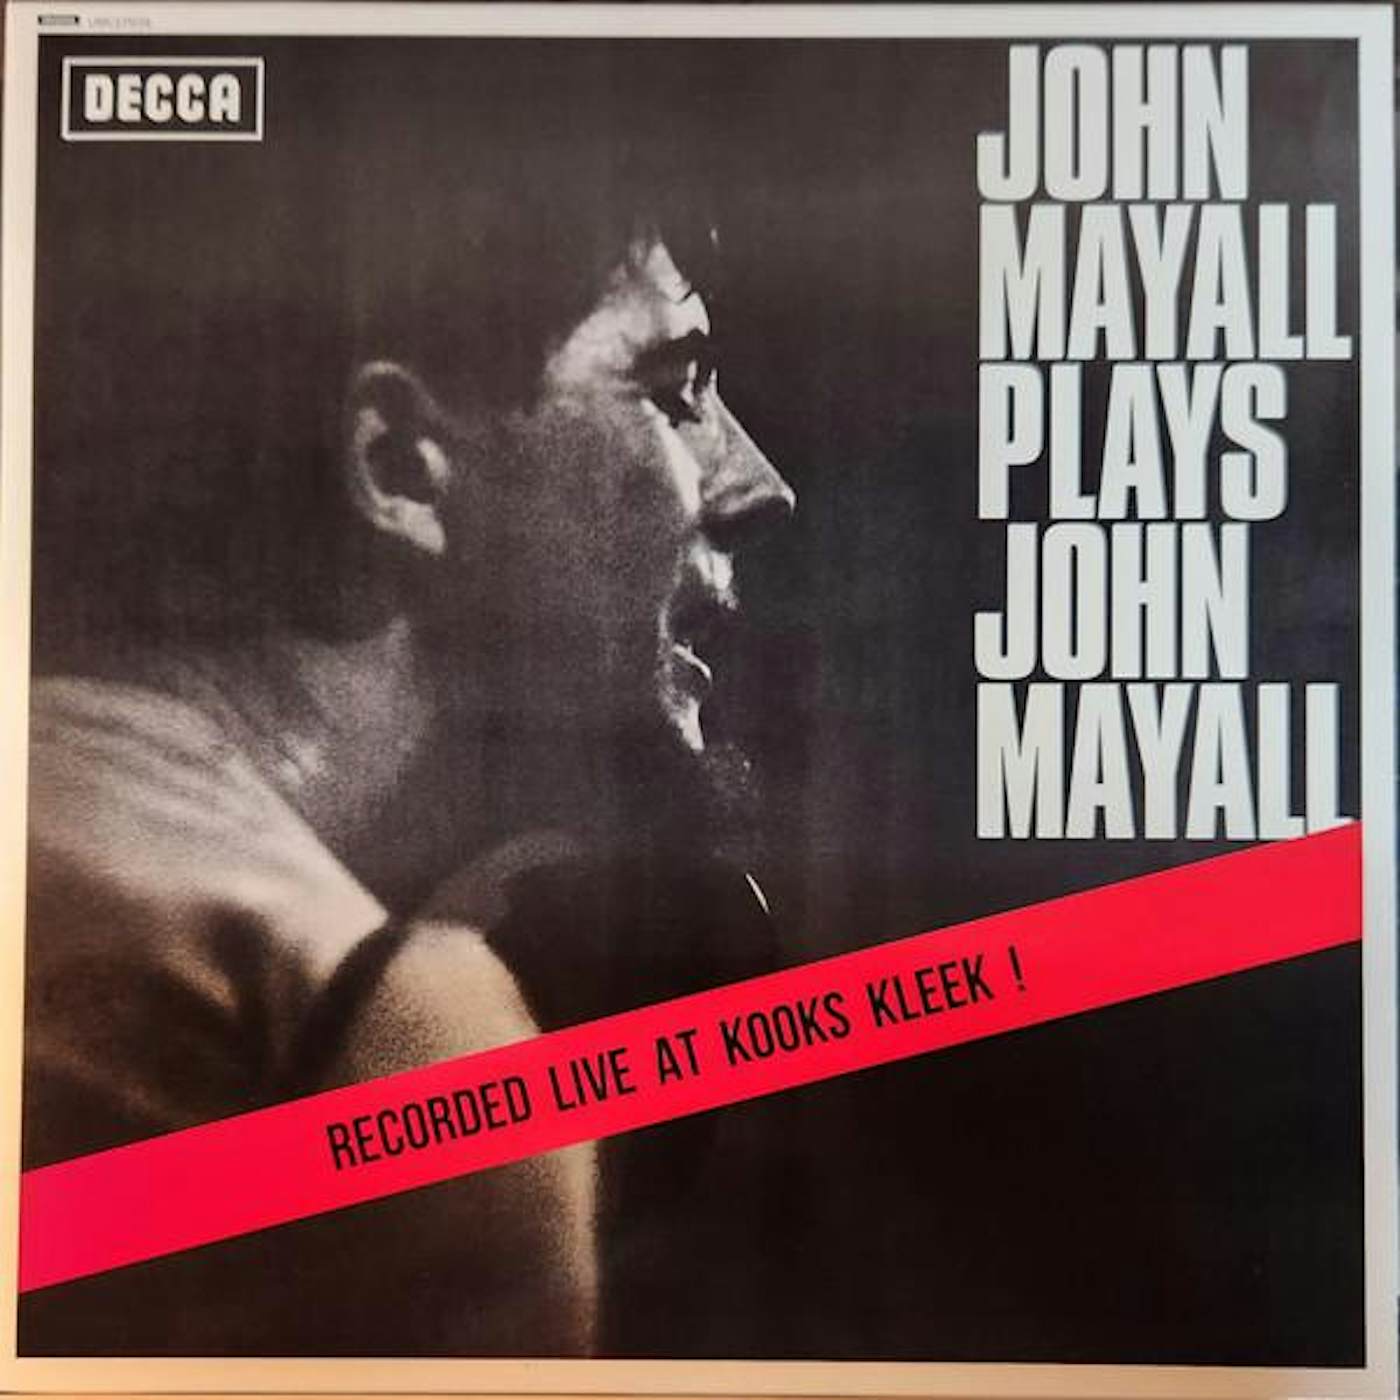 John Mayall & The Bluesbreakers JOHN MAYALL PLAYS JOHN MAYALL Vinyl Record